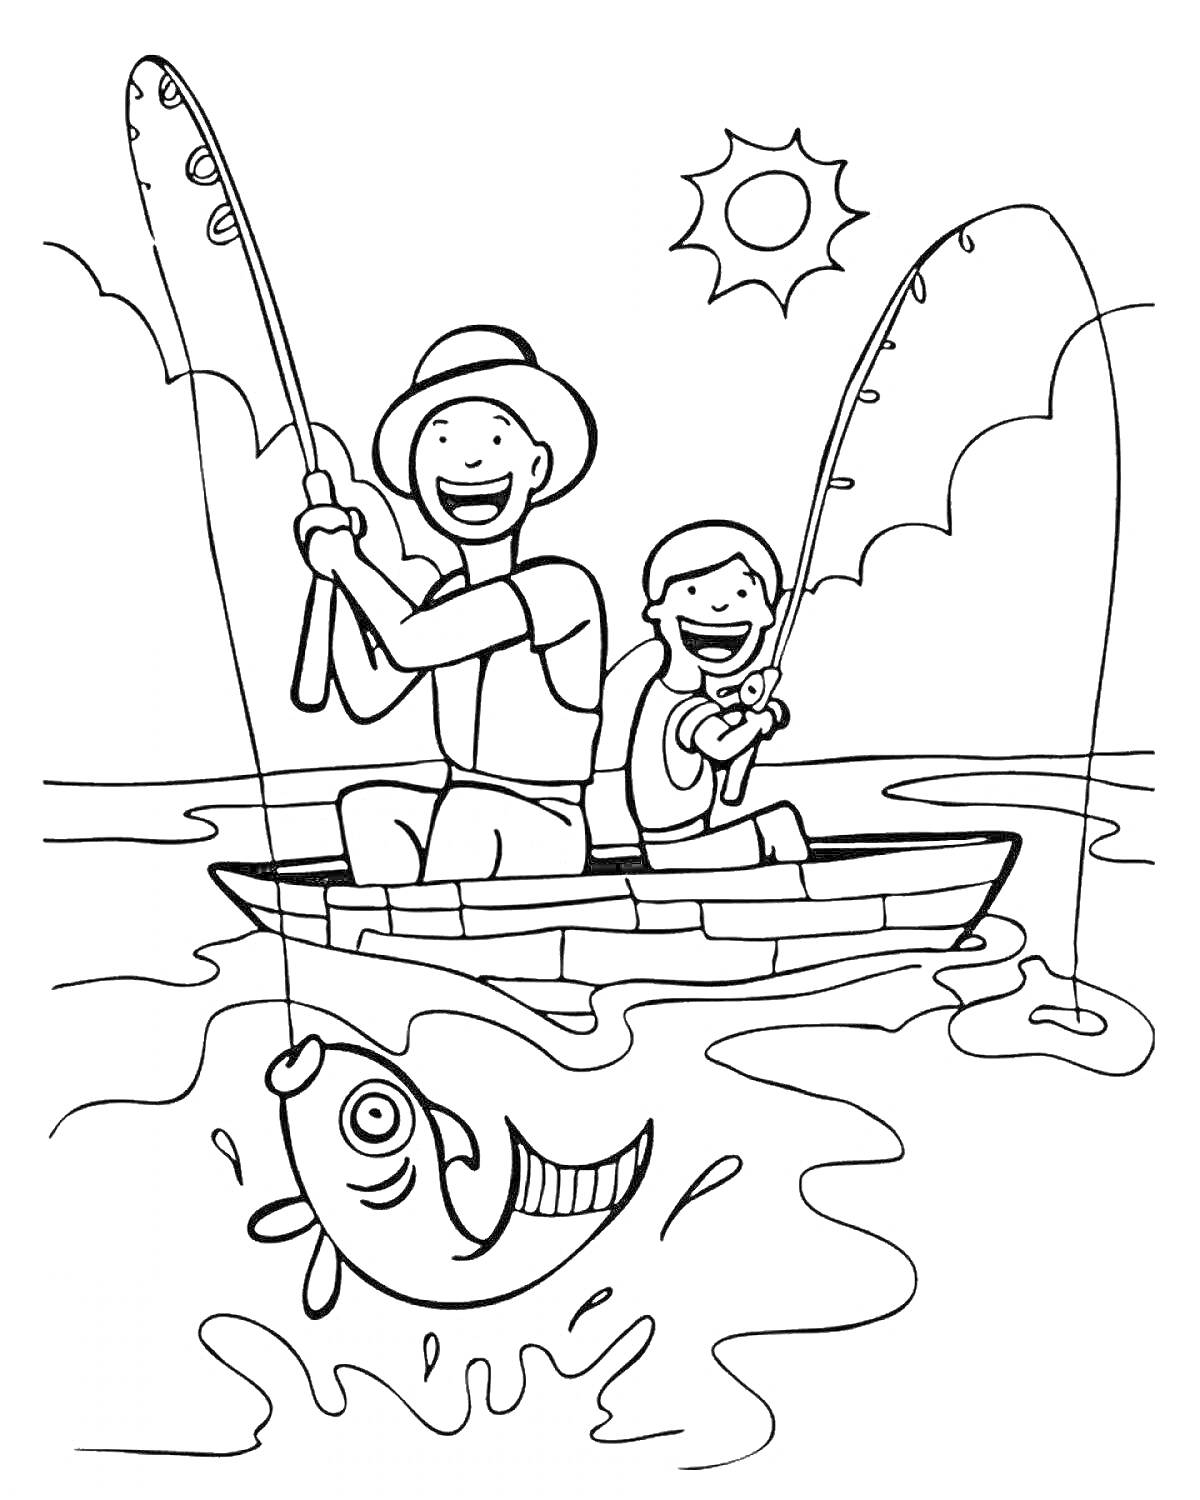 Раскраска Два рыбака на лодке, вылавливающие рыбу на удочку под солнцем